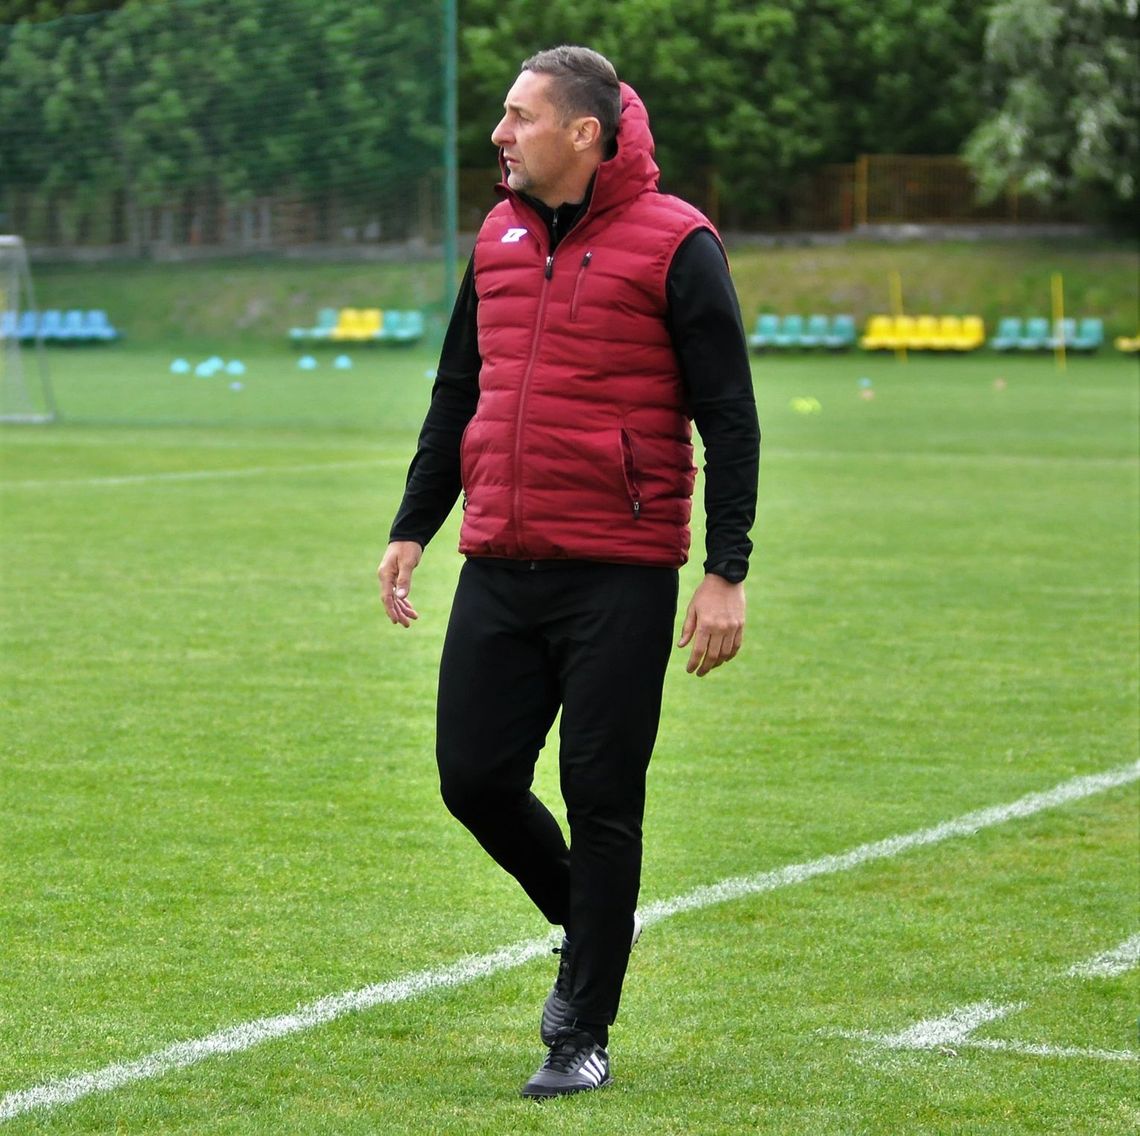 Trener Miłosz Storto: - Liga będzie bardzo ciekawa